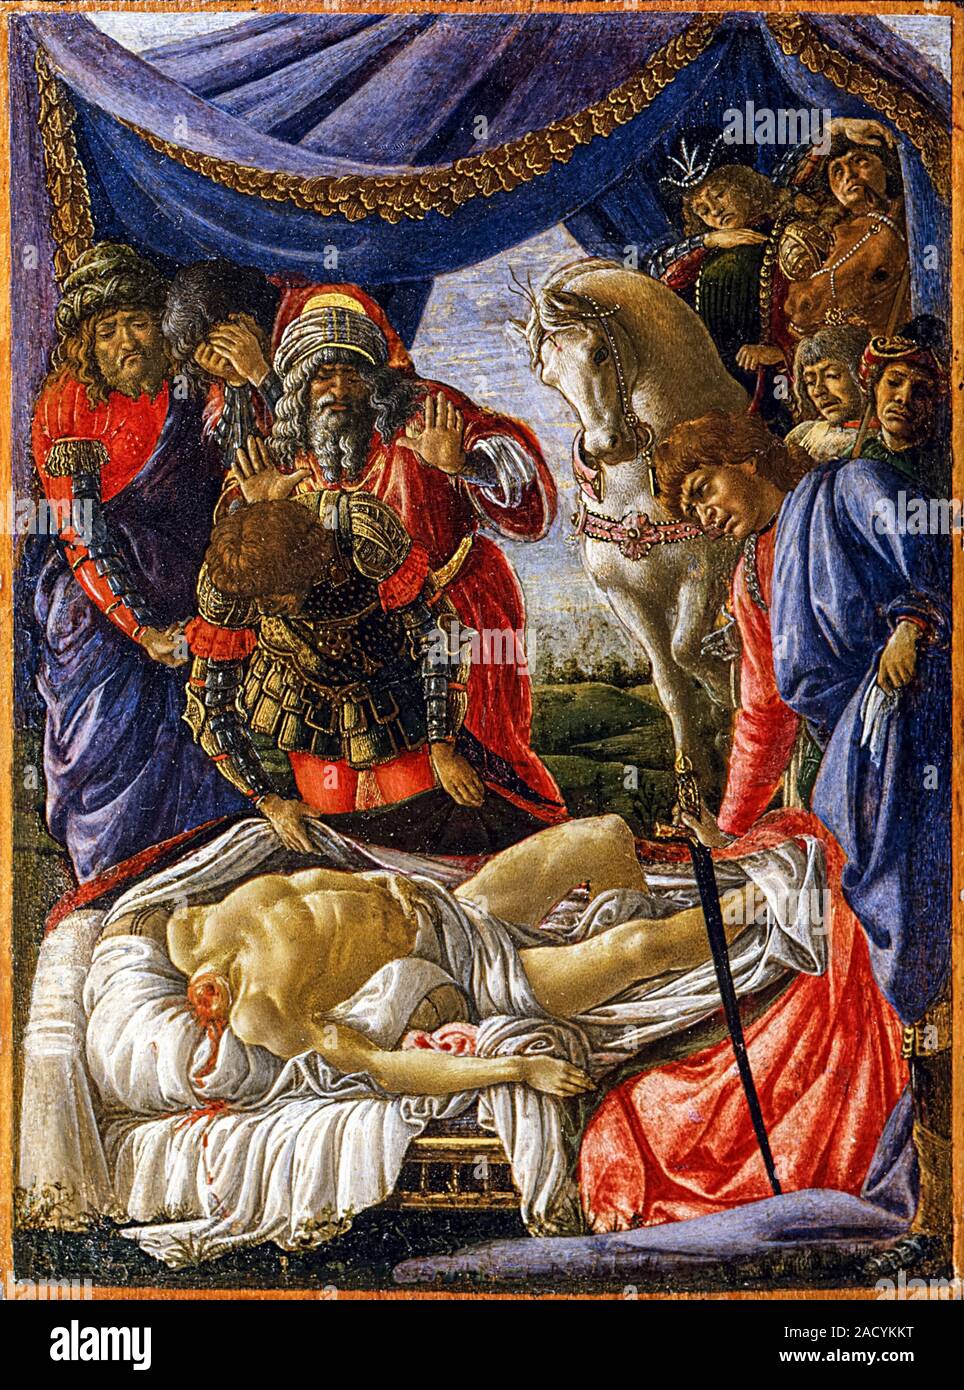 Sandro Botticelli, la découverte d'Holopherne' cadavre, Judith revient de le camp ennemi à Béthulie, peinture, 1470-1472 Banque D'Images